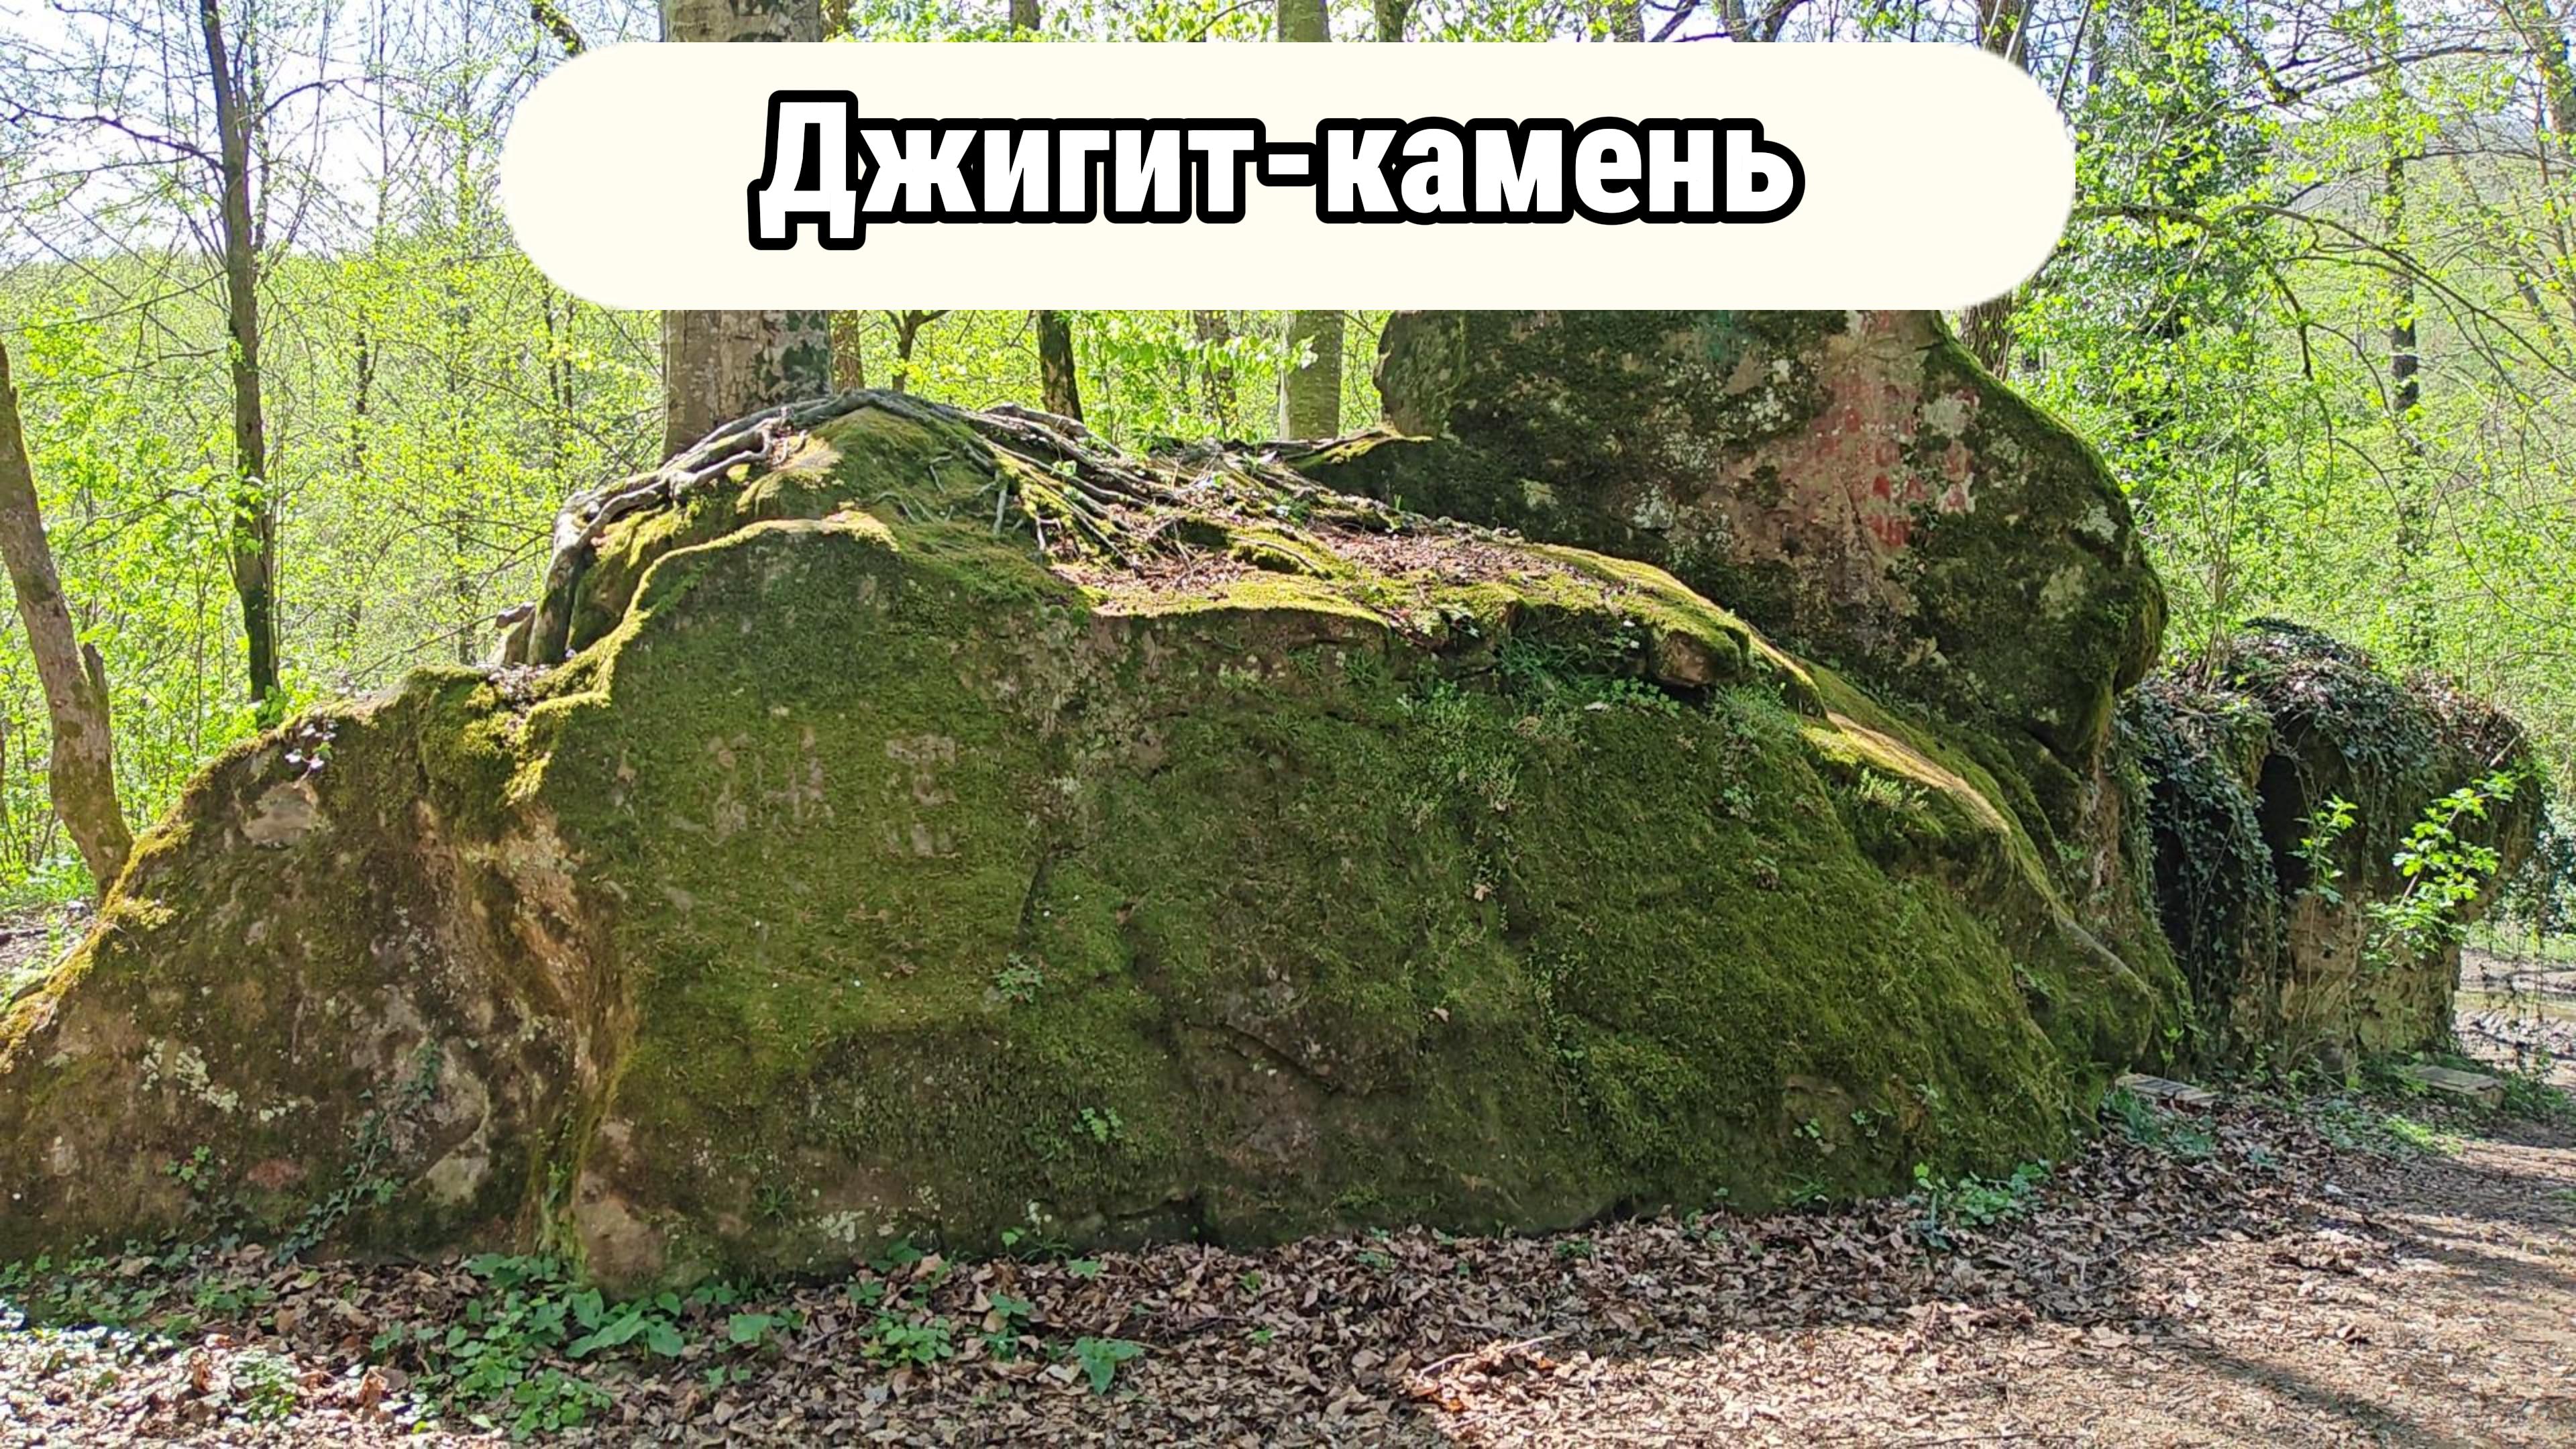 Скала Офицесркая и Джигит камень в Адербиевке